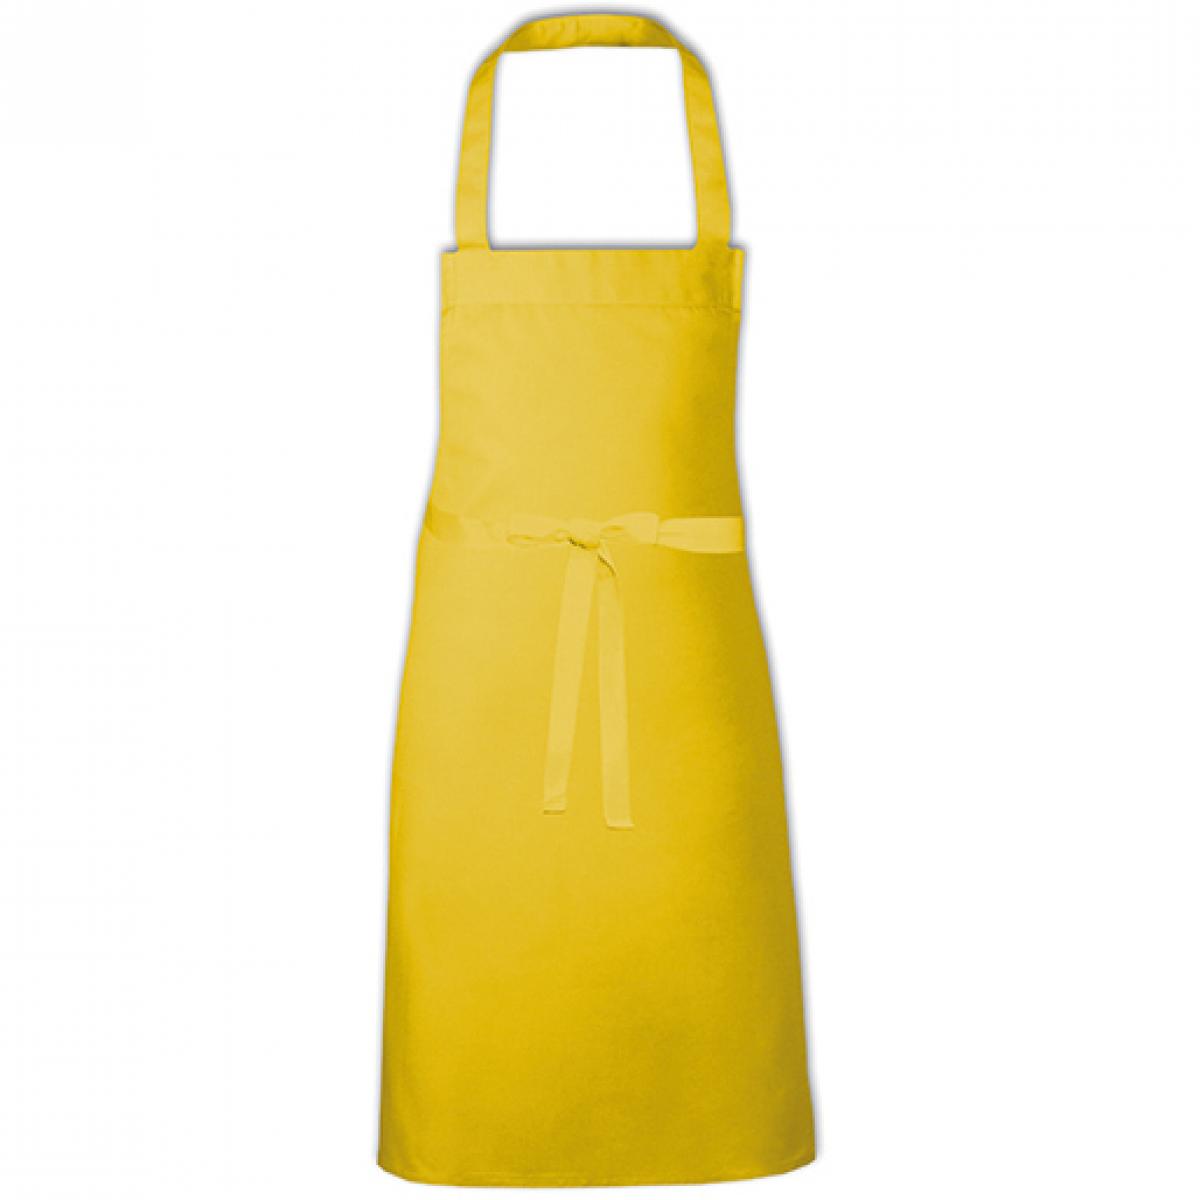 Hersteller: Link Kitchen Wear Herstellernummer: BBQ8073 Artikelbezeichnung: Barbecue Apron - 73 x 80 cm - Waschbar bis 60 °C Farbe: Yellow